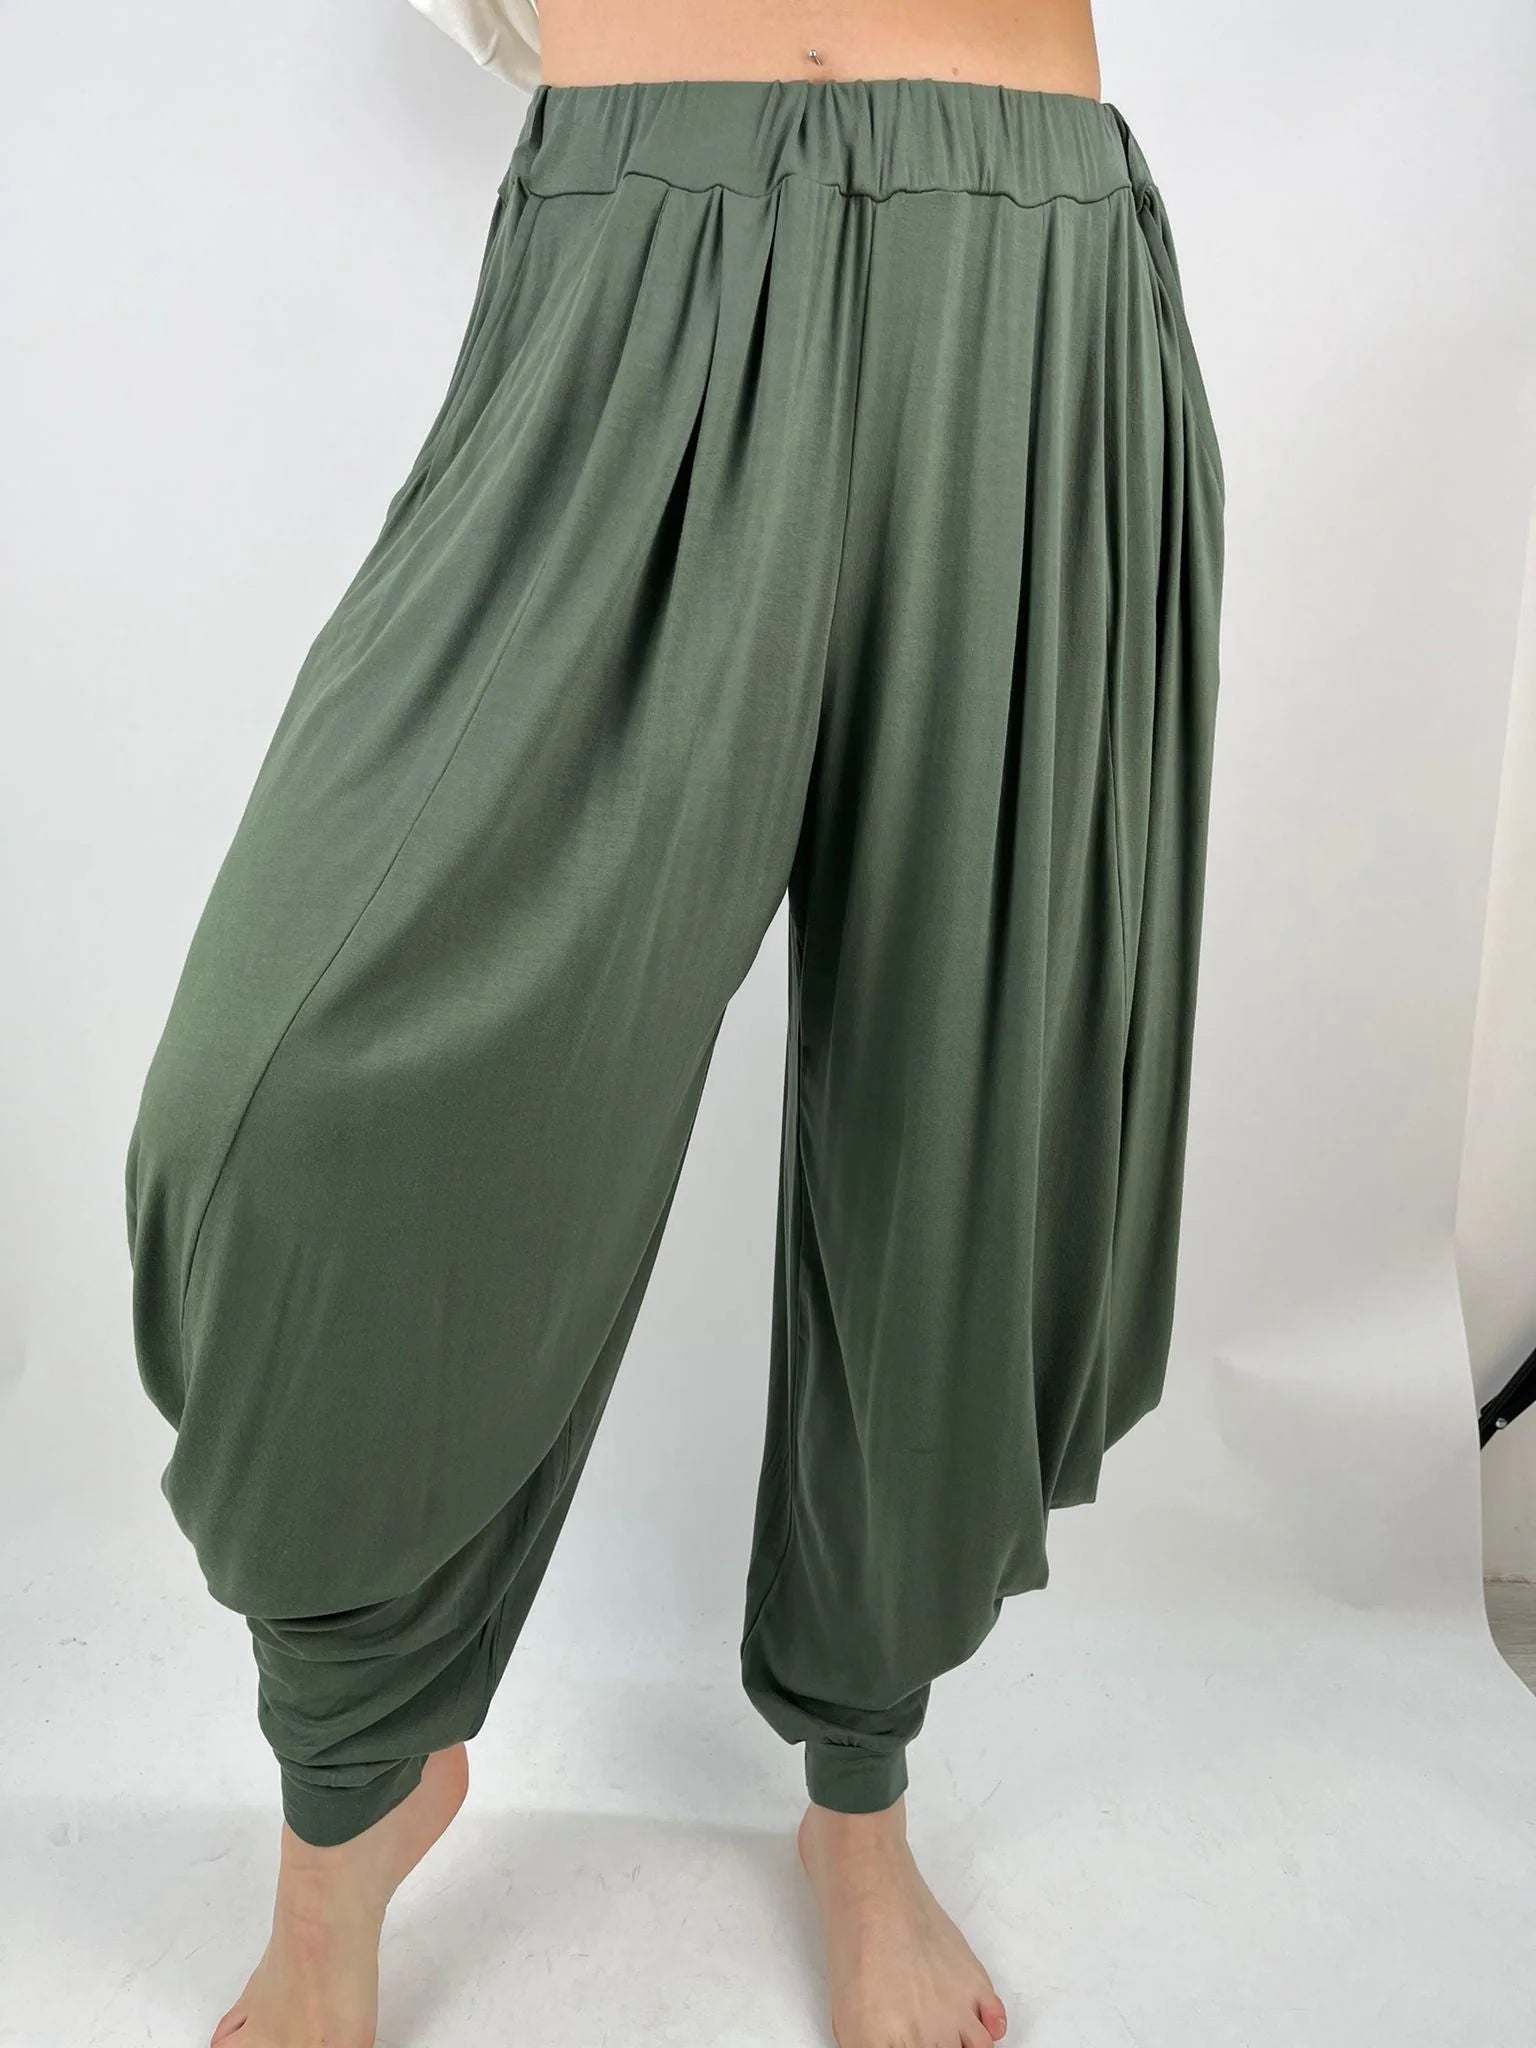 Buy Womens Casual Cropped Harem Pants Beam Foot Pants Pocket Loose Shorts  Khaki at Amazonin